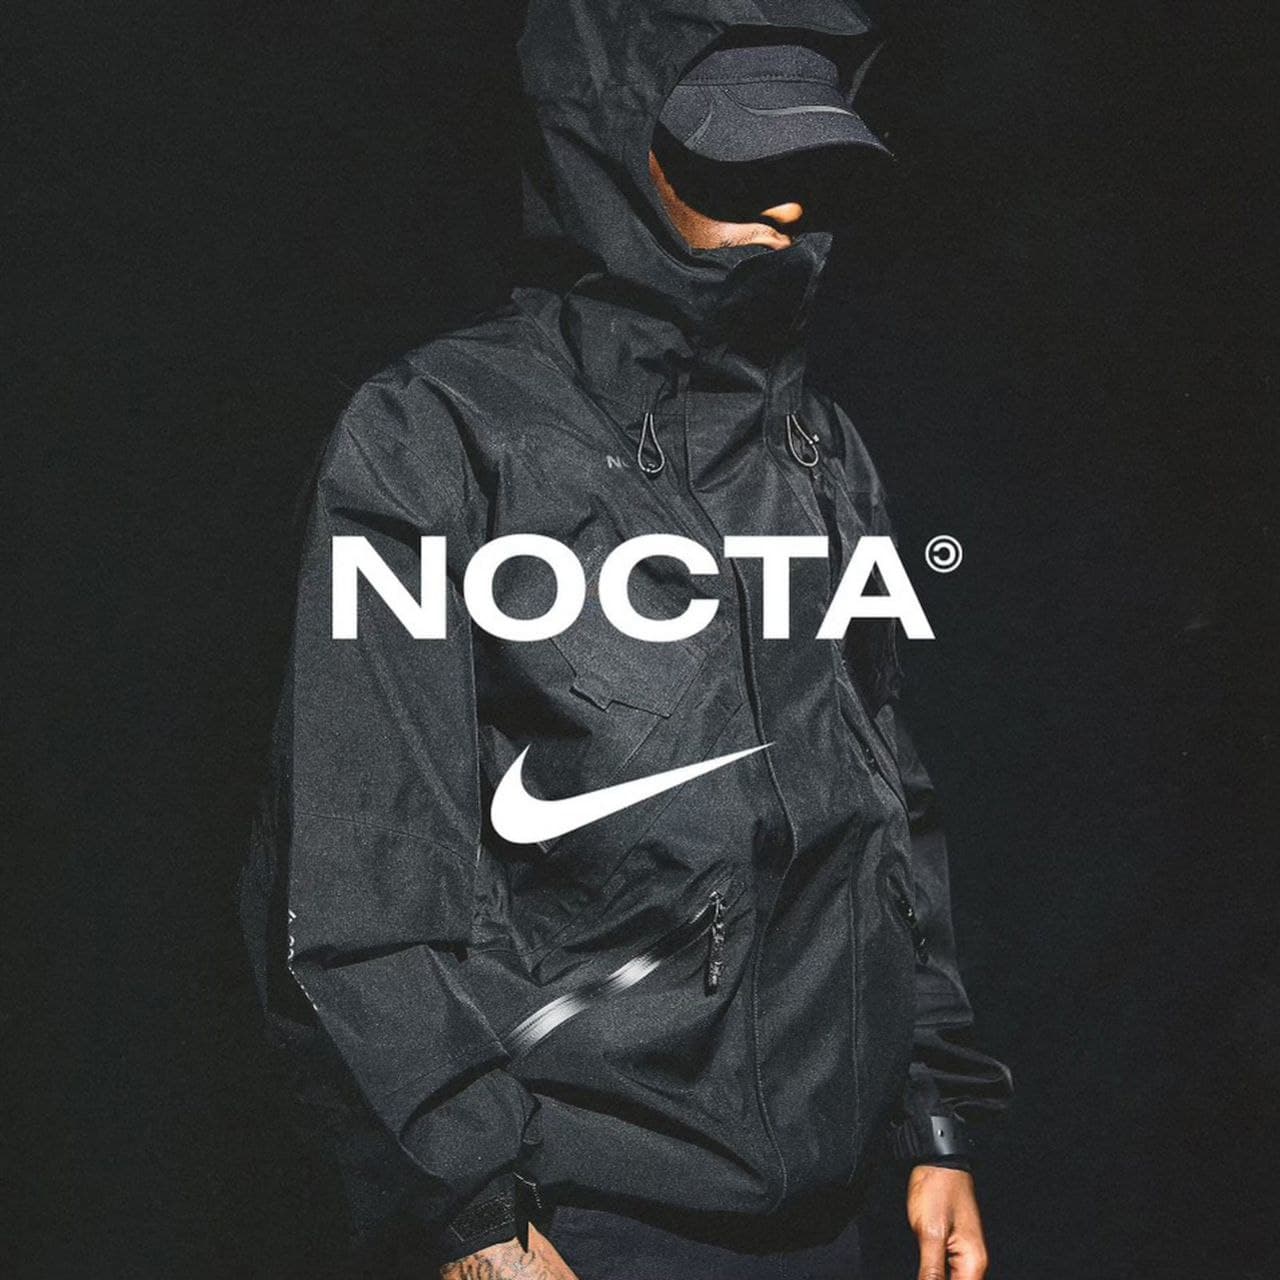 Фото: Дрейк и Nike показали лукбук совместной линии NOCTA